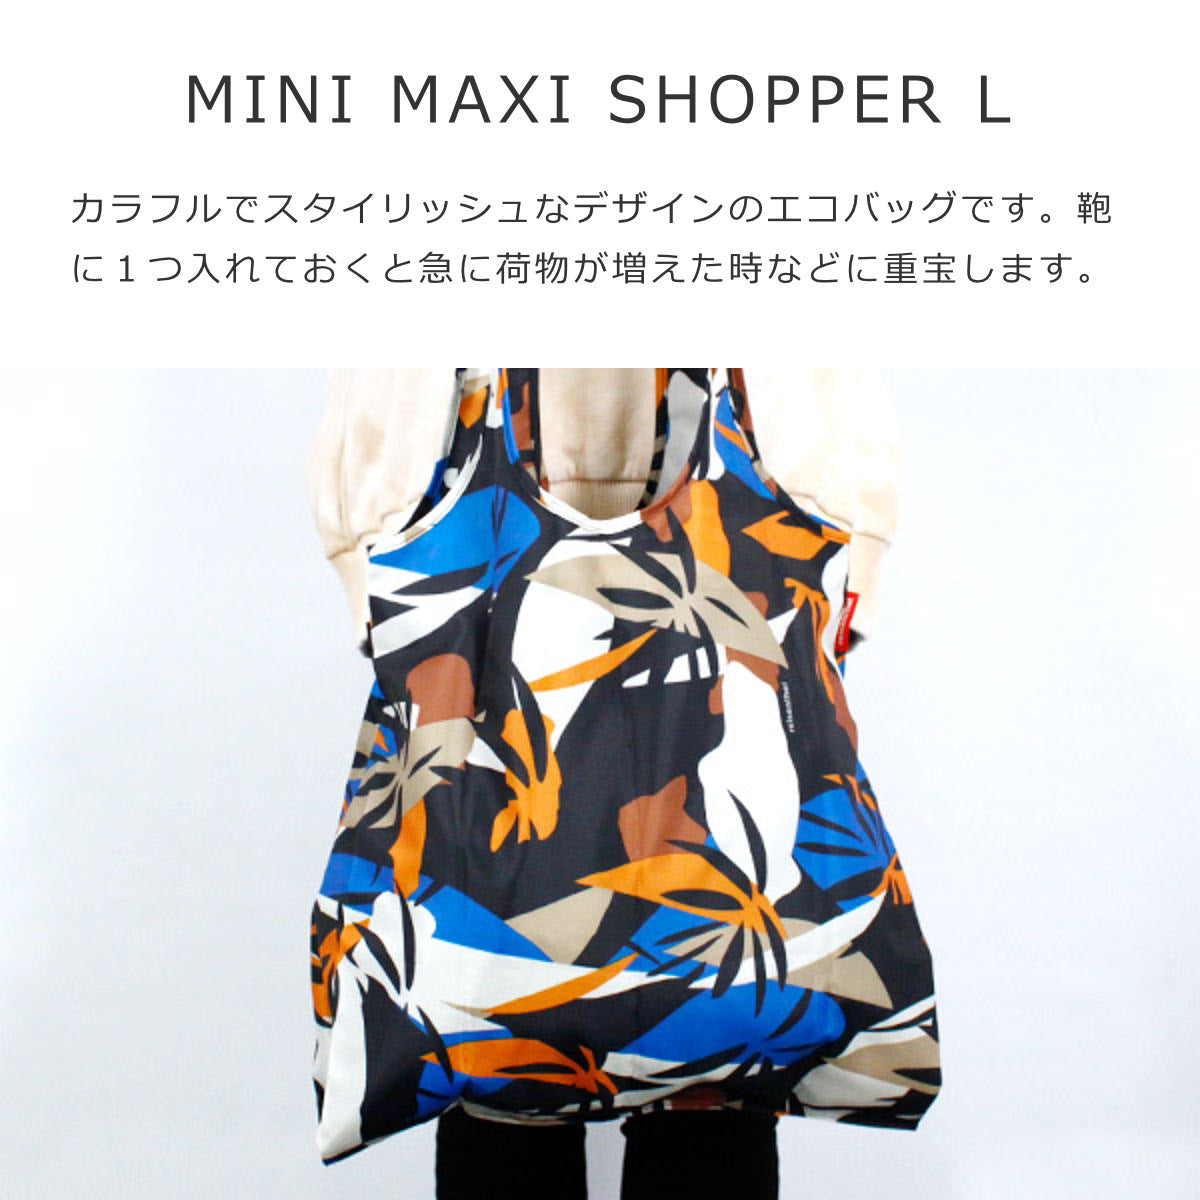 ショッピングバッグ  ミニマキシショッパーL(MINI MAXI SHOPPER L)